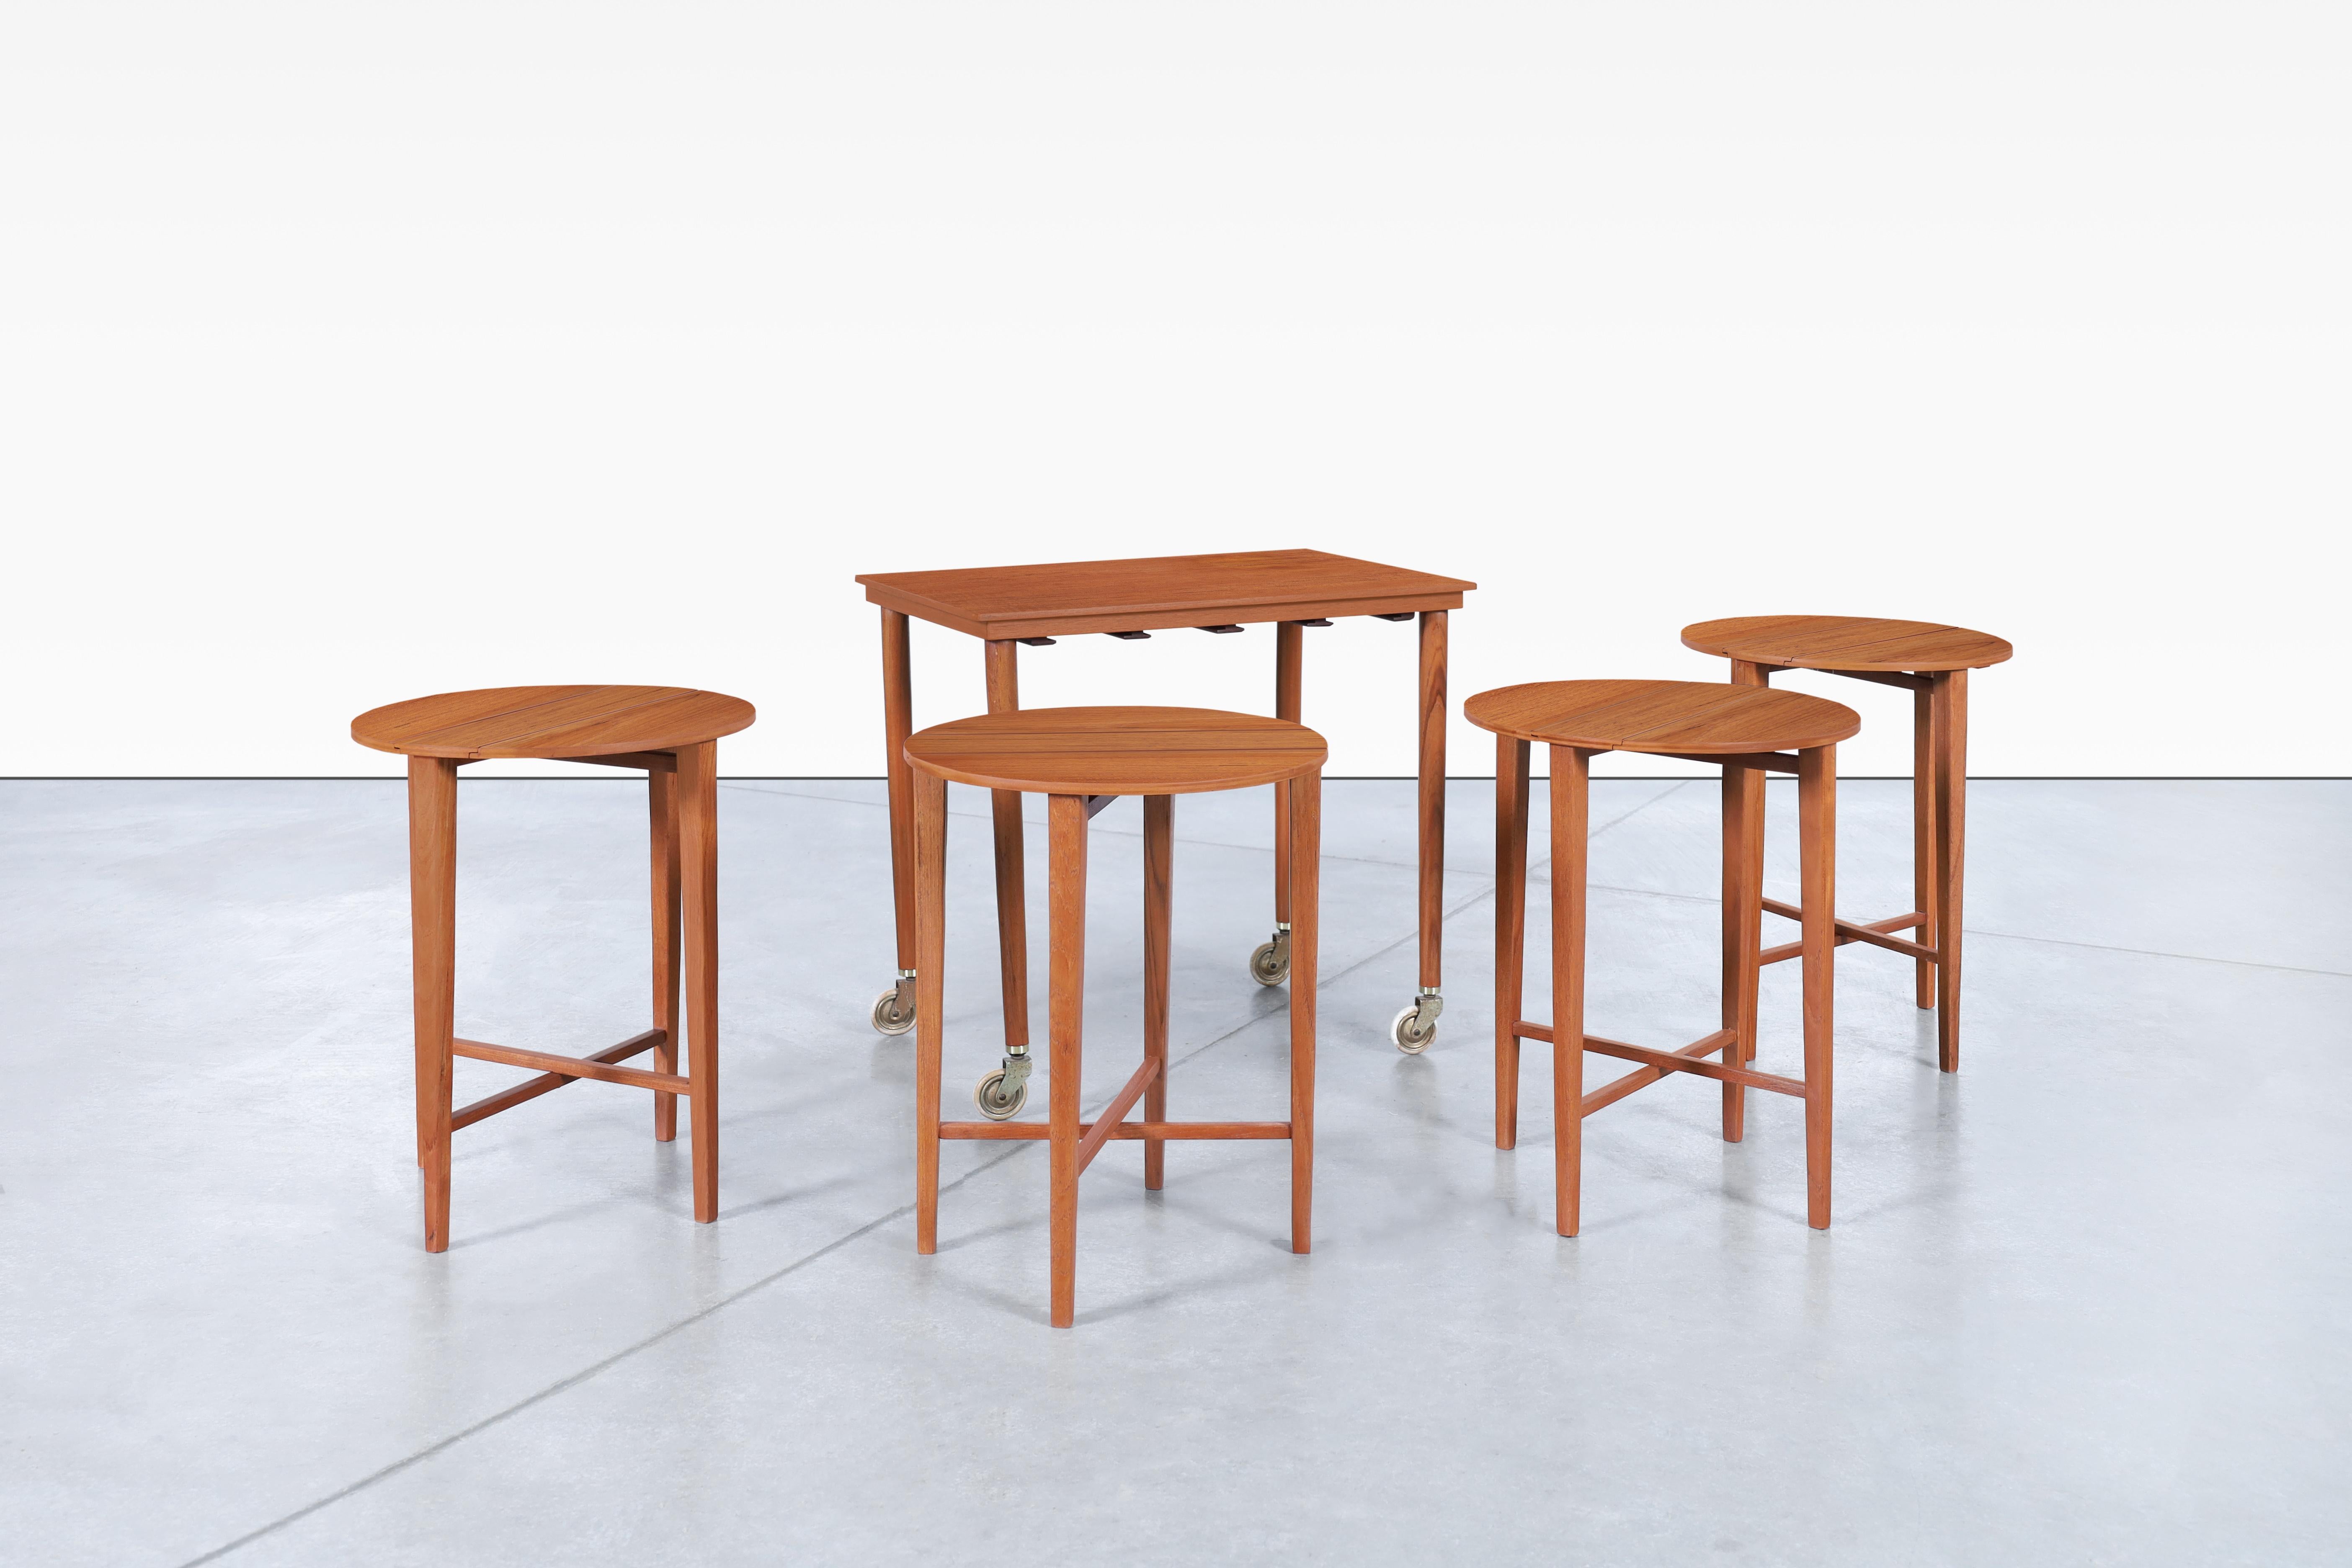 Schöner moderner dänischer Tisch aus Teakholz, entworfen von Carlo Jensen für Poul Hundevad in Dänemark, ca. 1960er Jahre. Dieses handgefertigte Möbelstück mit einer Platte aus Teakholz, Beinen aus Buche und Akzenten aus Metall ist ein Beweis für